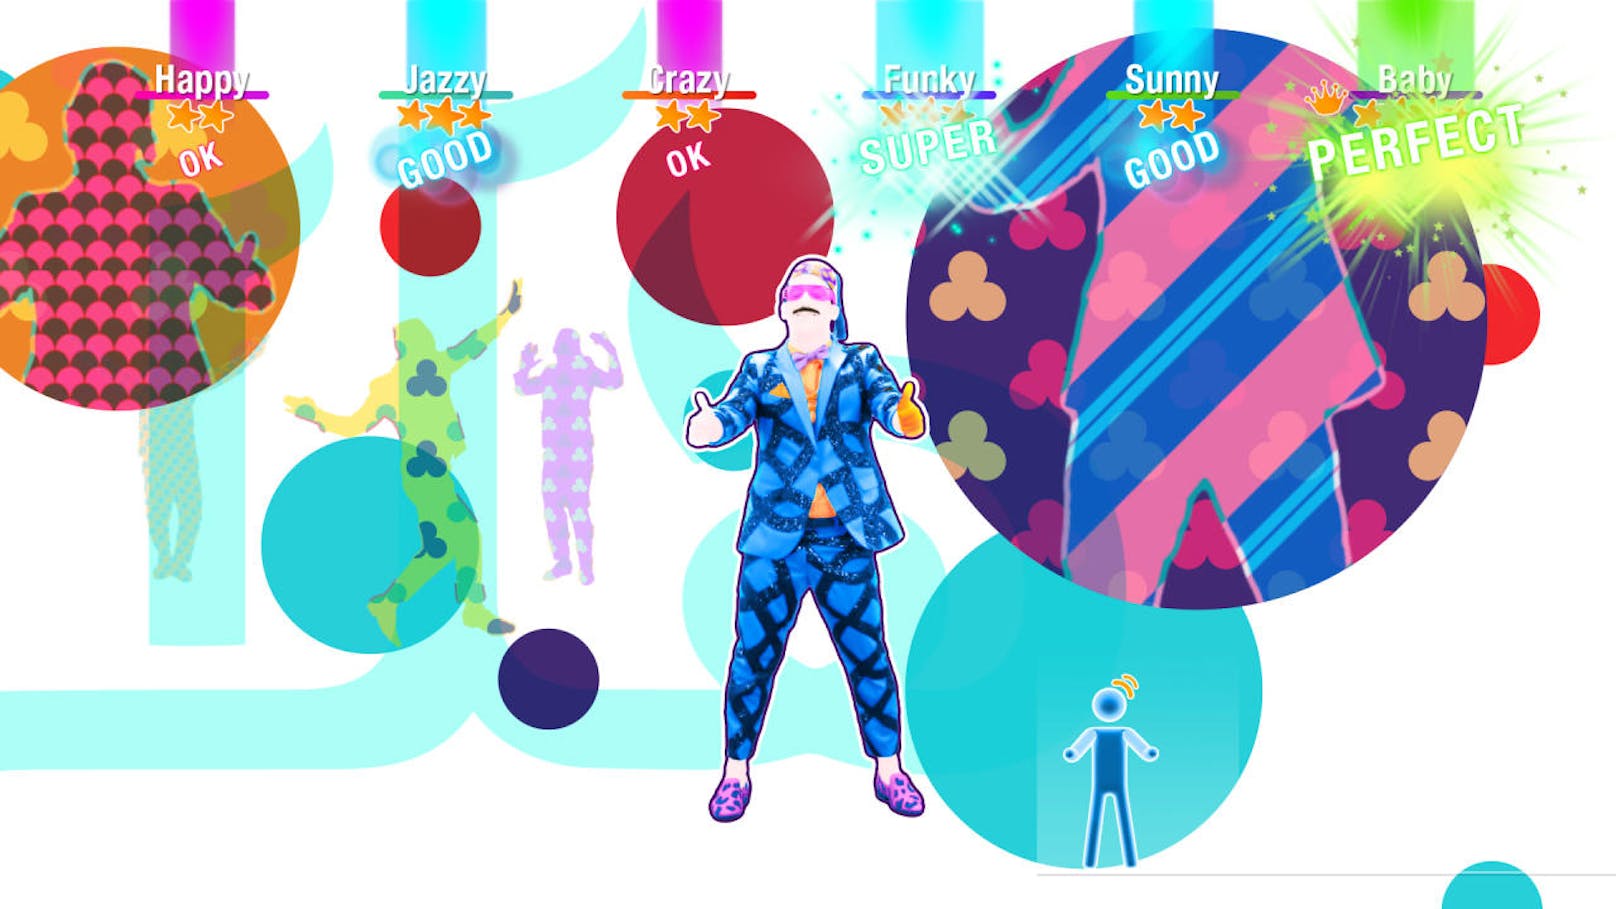 Ubisoft kündigt ein neues Content-Update für Just Dance 2019 an, um die bevorstehende Weihnachtszeit zu feiern. Das Update bietet den Besitzern von Just Dance 2019 kostenlose Inhalte wie Playlists und Online-Wettbewerbe sowie einige exklusive Songs, die nur über Just Dance Unlimited, den erfolgreichen Dance-on-Demand-Streaming-Service, zugänglich sind. Just Dance Unlimited ermöglicht den Zugriff auf mehr als 400 Songs und zahlreiche neue Inhalte, die das ganze Jahr über implementiert wurden, darunter vier umfangreiche Updates zu spezifischen Themen, um ganzjährig unvergessliche Momente zu feiern.